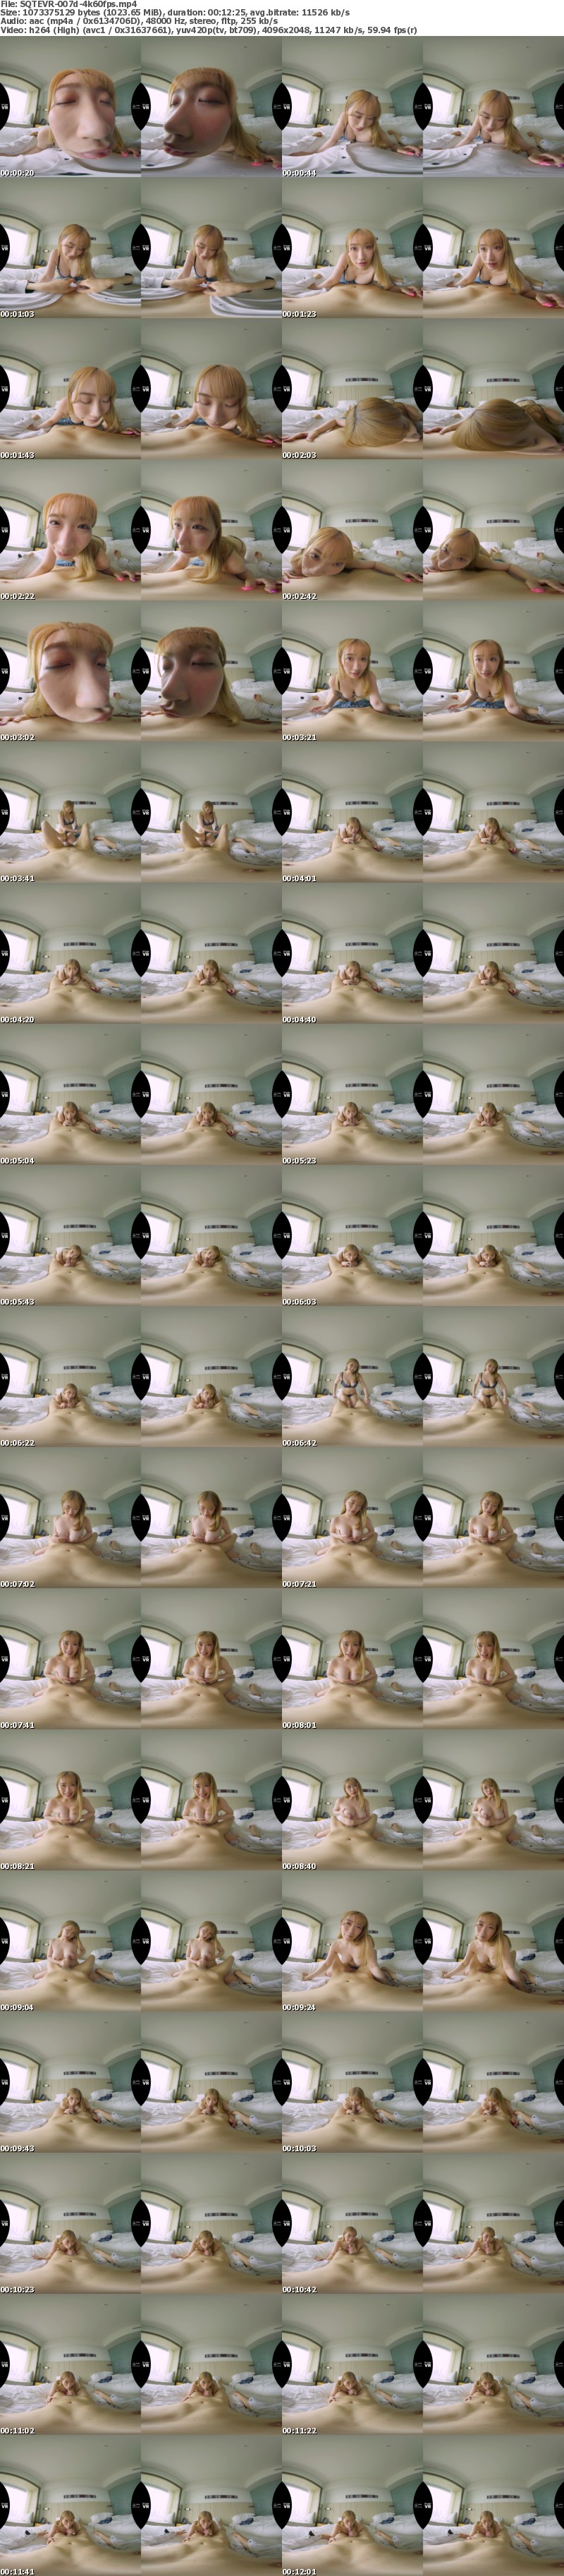 [VR] SQTEVR-007 【VR】S-CuteフェラチオコレクションVR 美少女のチンチン舐め回し口内発射8連発！